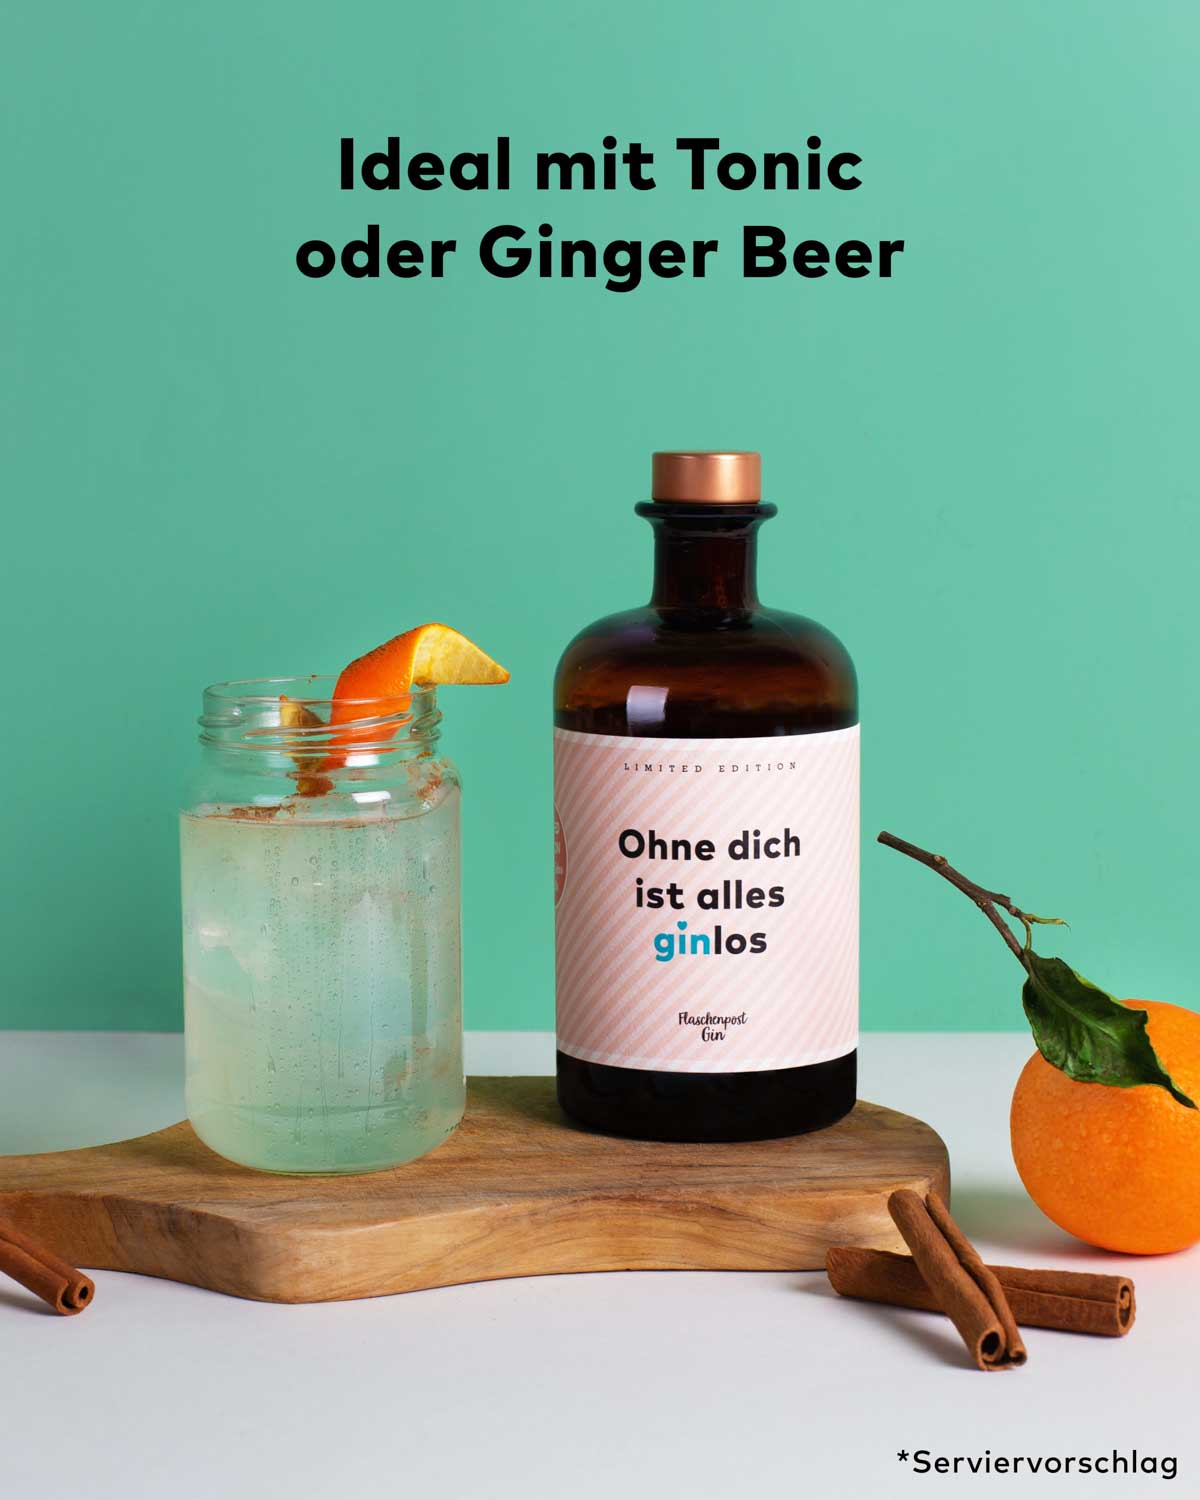 Die Love Edition mit dem liebvollen Spruch - Ohne dich ist alles ginlos - von Flaschenpost Gin als Servierempfehlung mit Ginger Beer und Orange als Garnitur. Tonic Water passt auch ideal zu den Botanicals Tonka & Vanille.